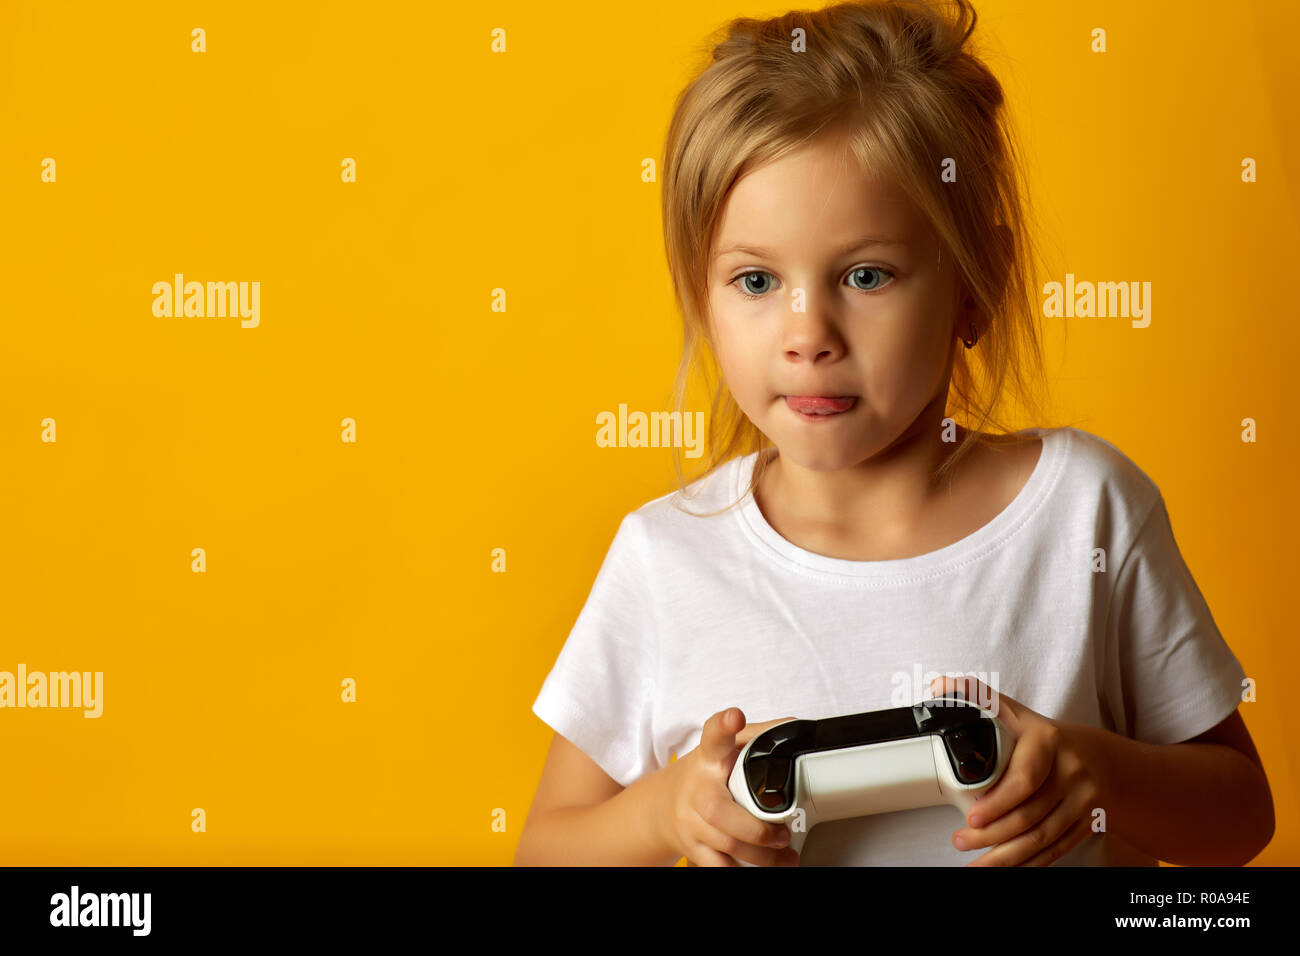 Peu absorbé girl in white t-shirt holding manette de jeu jouer jeu vidéo sur fond jaune Banque D'Images